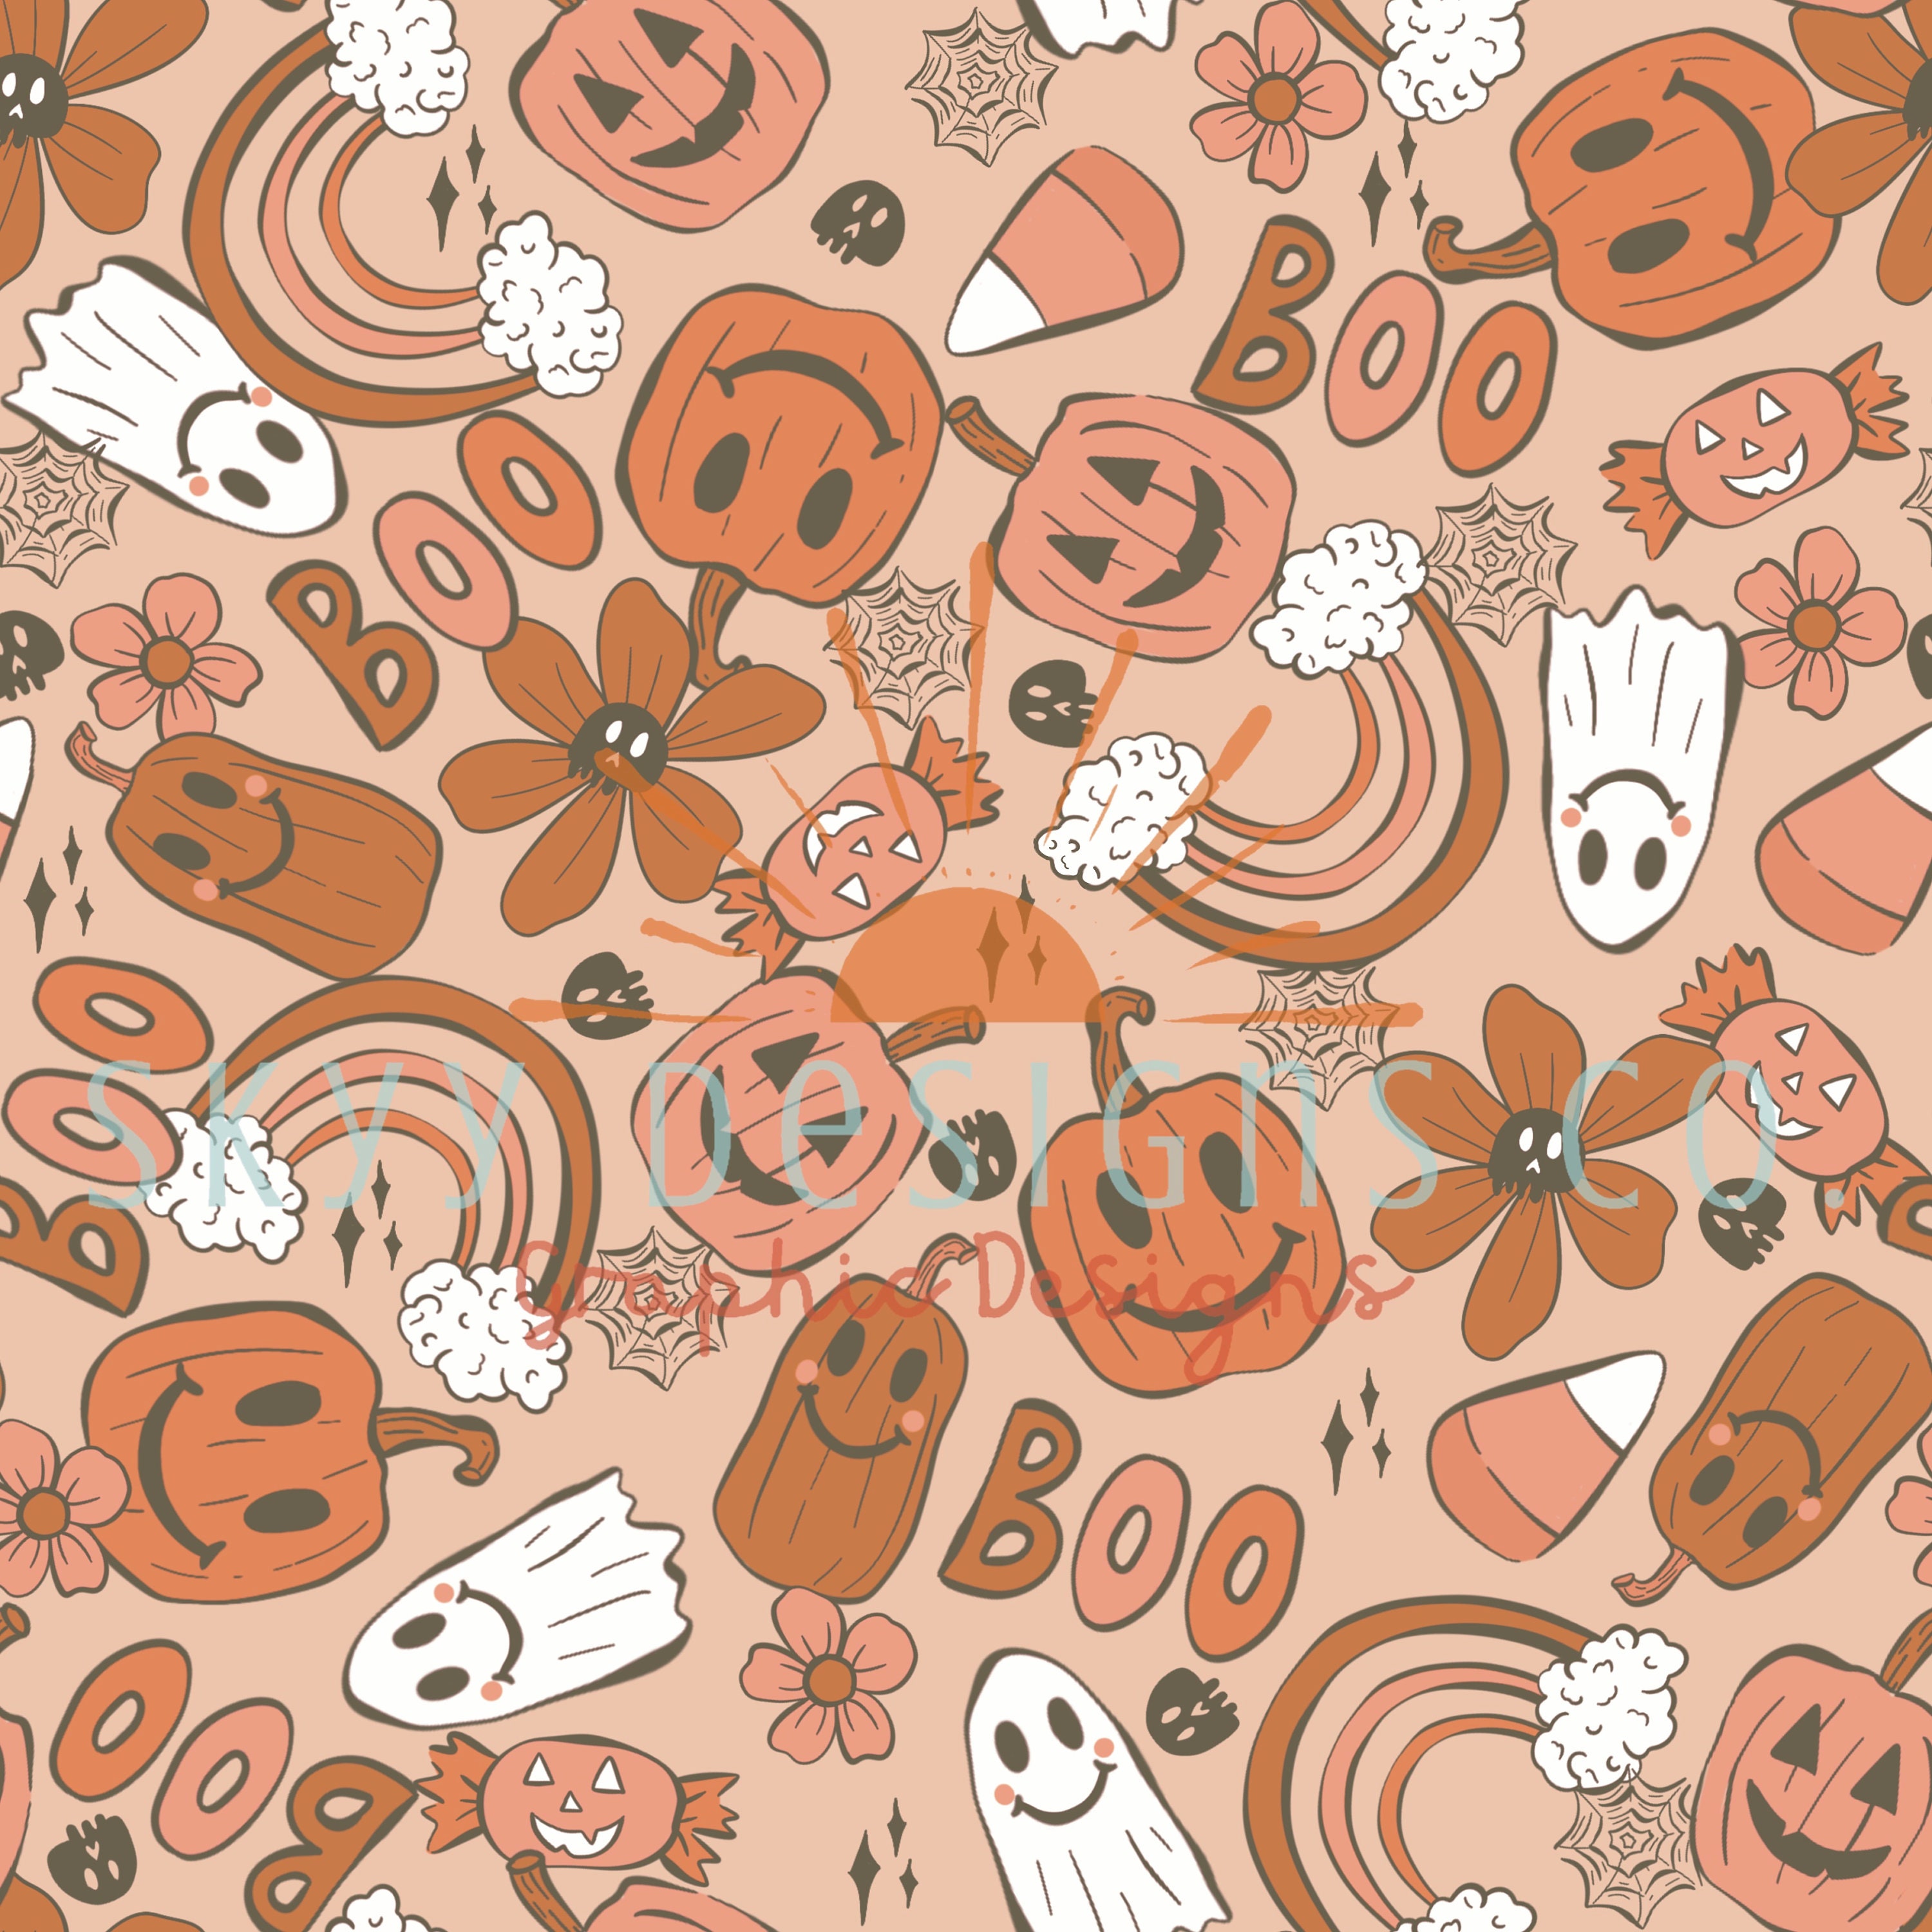 30 Preppy Halloween Wallpaper Ideas  Pumpkin Face Bat  Ghost Yellow  Background  Idea Wallpapers  iPhone WallpapersColor Schemes